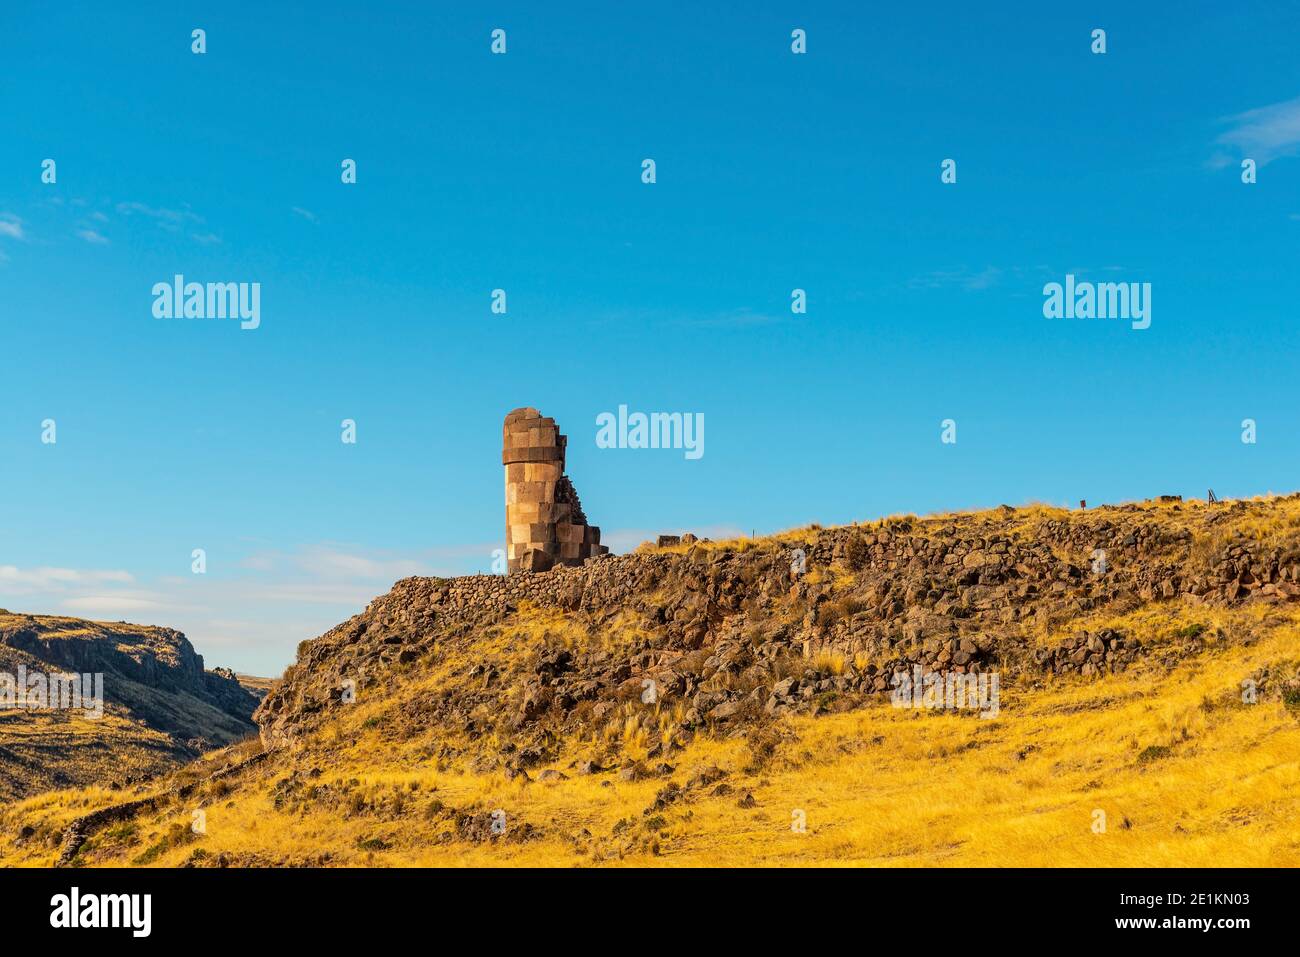 Chullpa or Inca tomb tower in Sillustani, Peru. Stock Photo